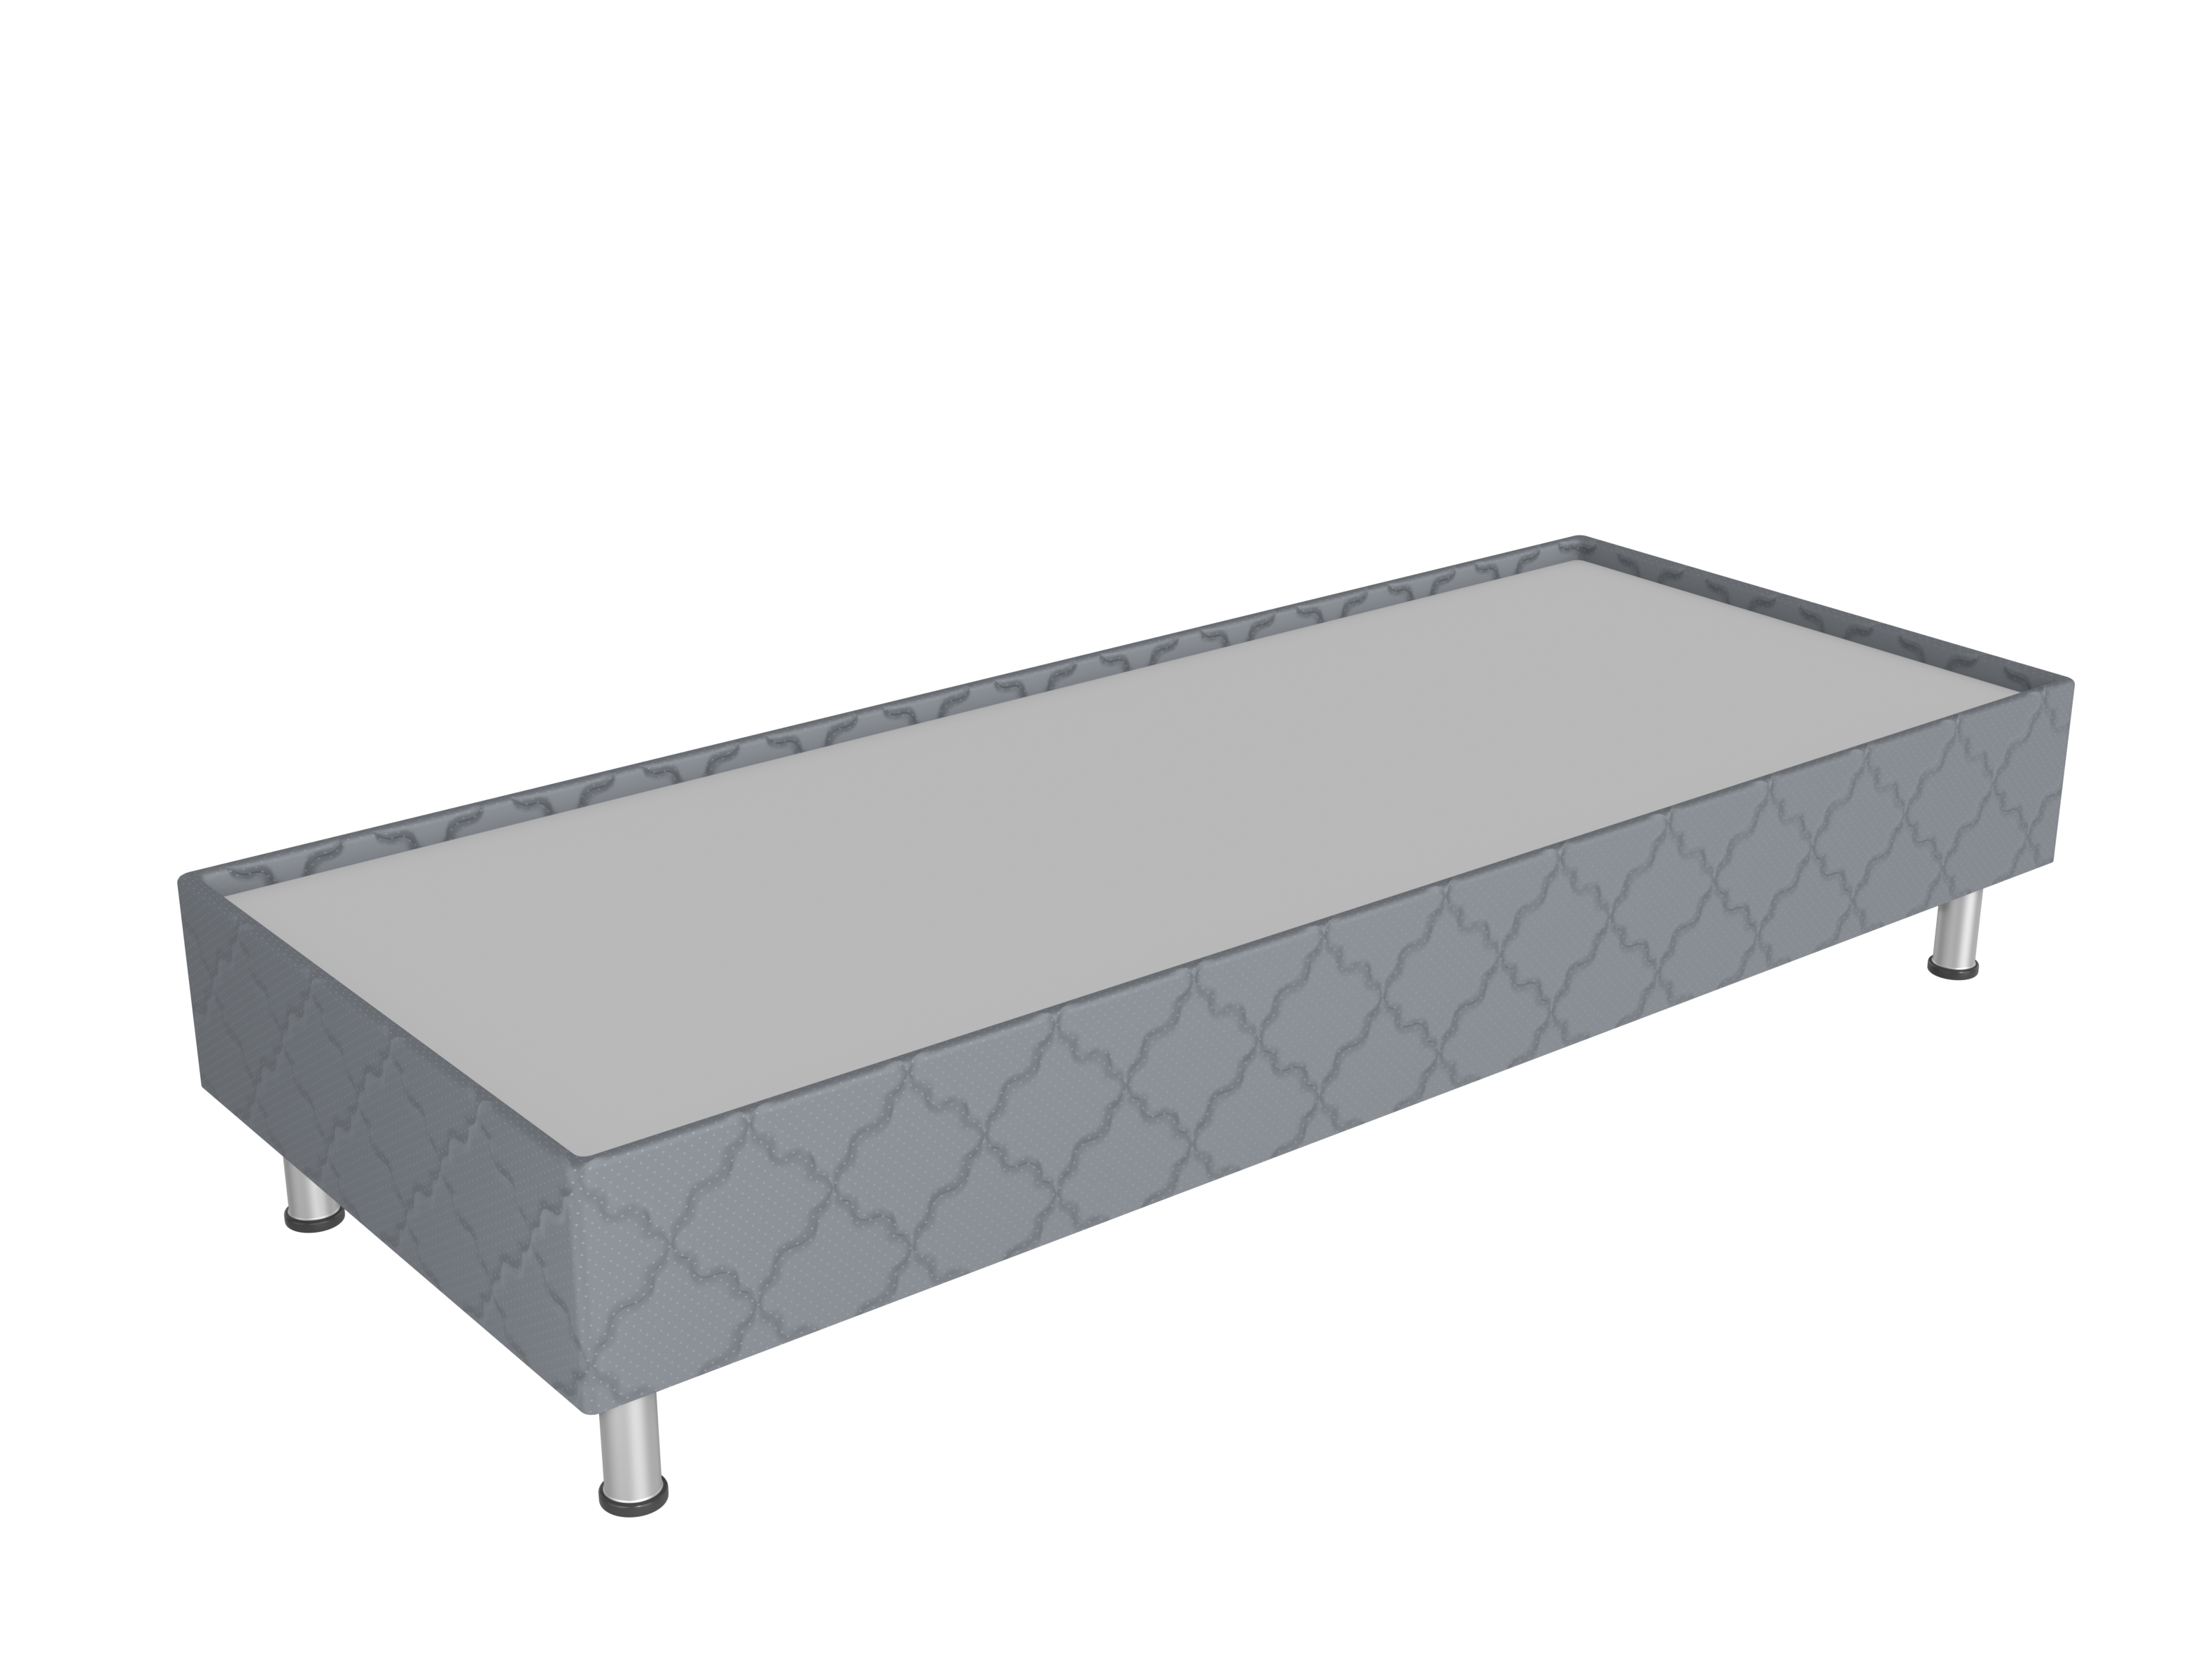 Spring box кровать — СБ-200/90 серый основание для гостиницы